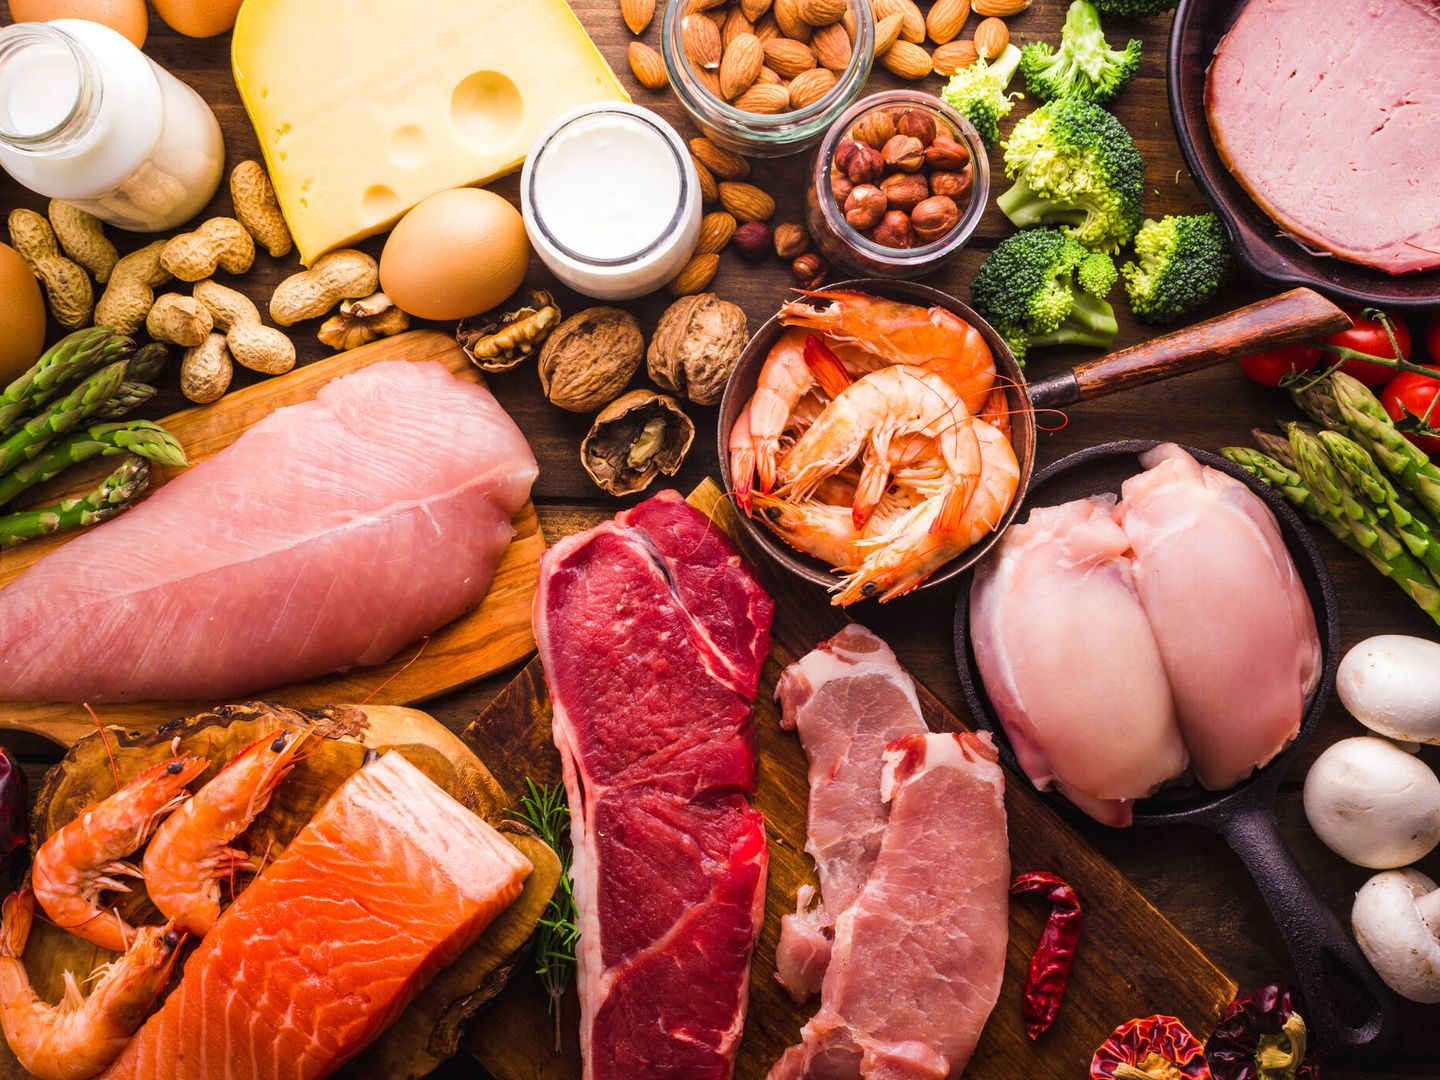 Los alimentos que mayor cantidad de proteína contienen son la carne, el pescado y los huevos.